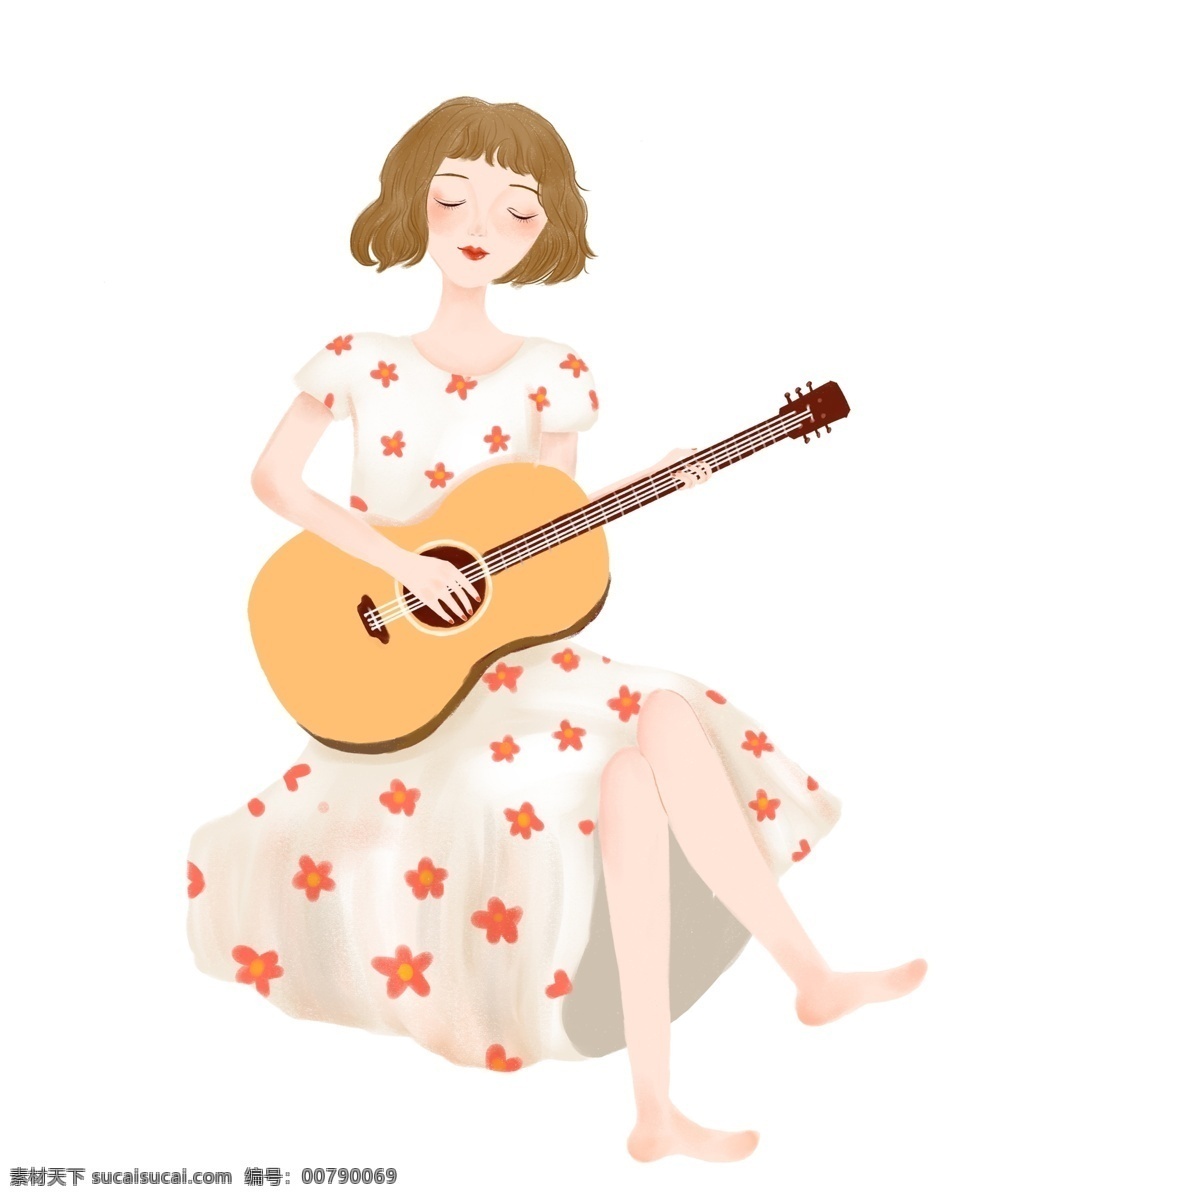 弹 吉他 女孩 图案 元素 卡通女孩 卡通人物 人物元素 乐器 女孩图案 装饰图案